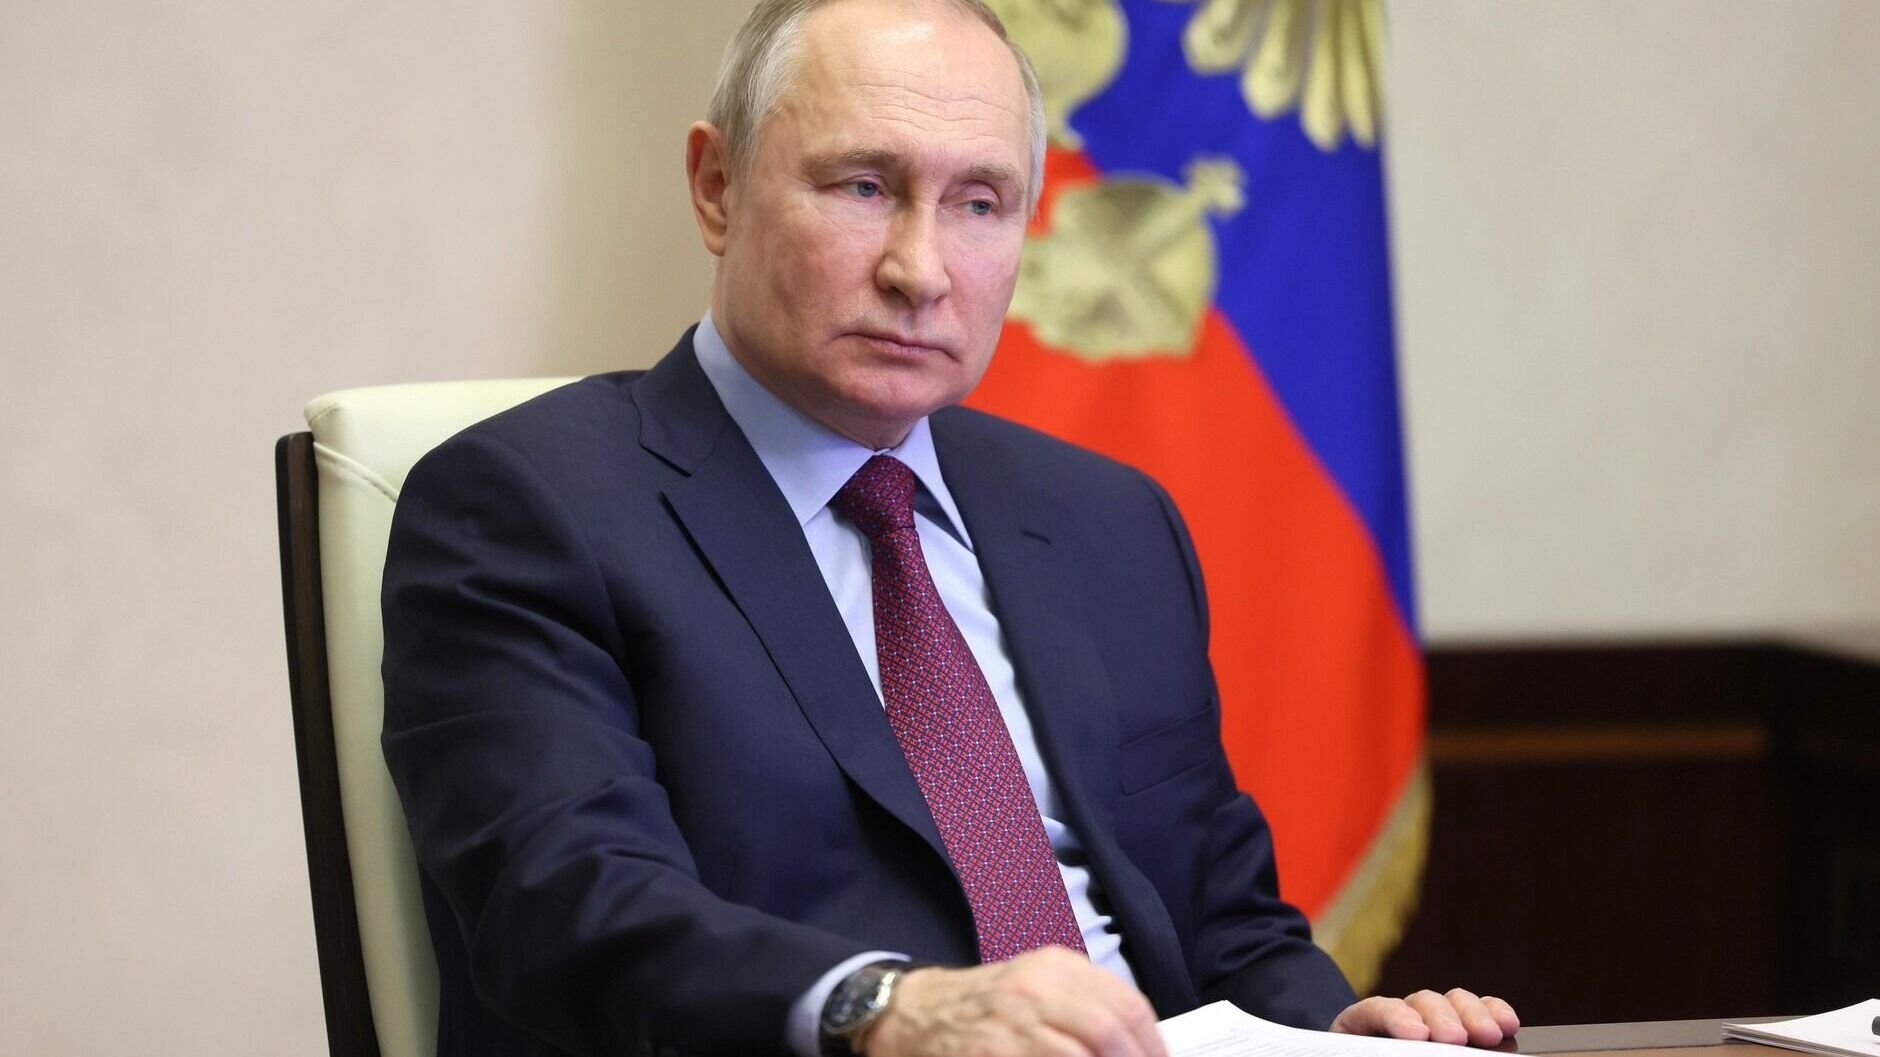 Путин: Запад развязал войну, Россия пытается ее закончить